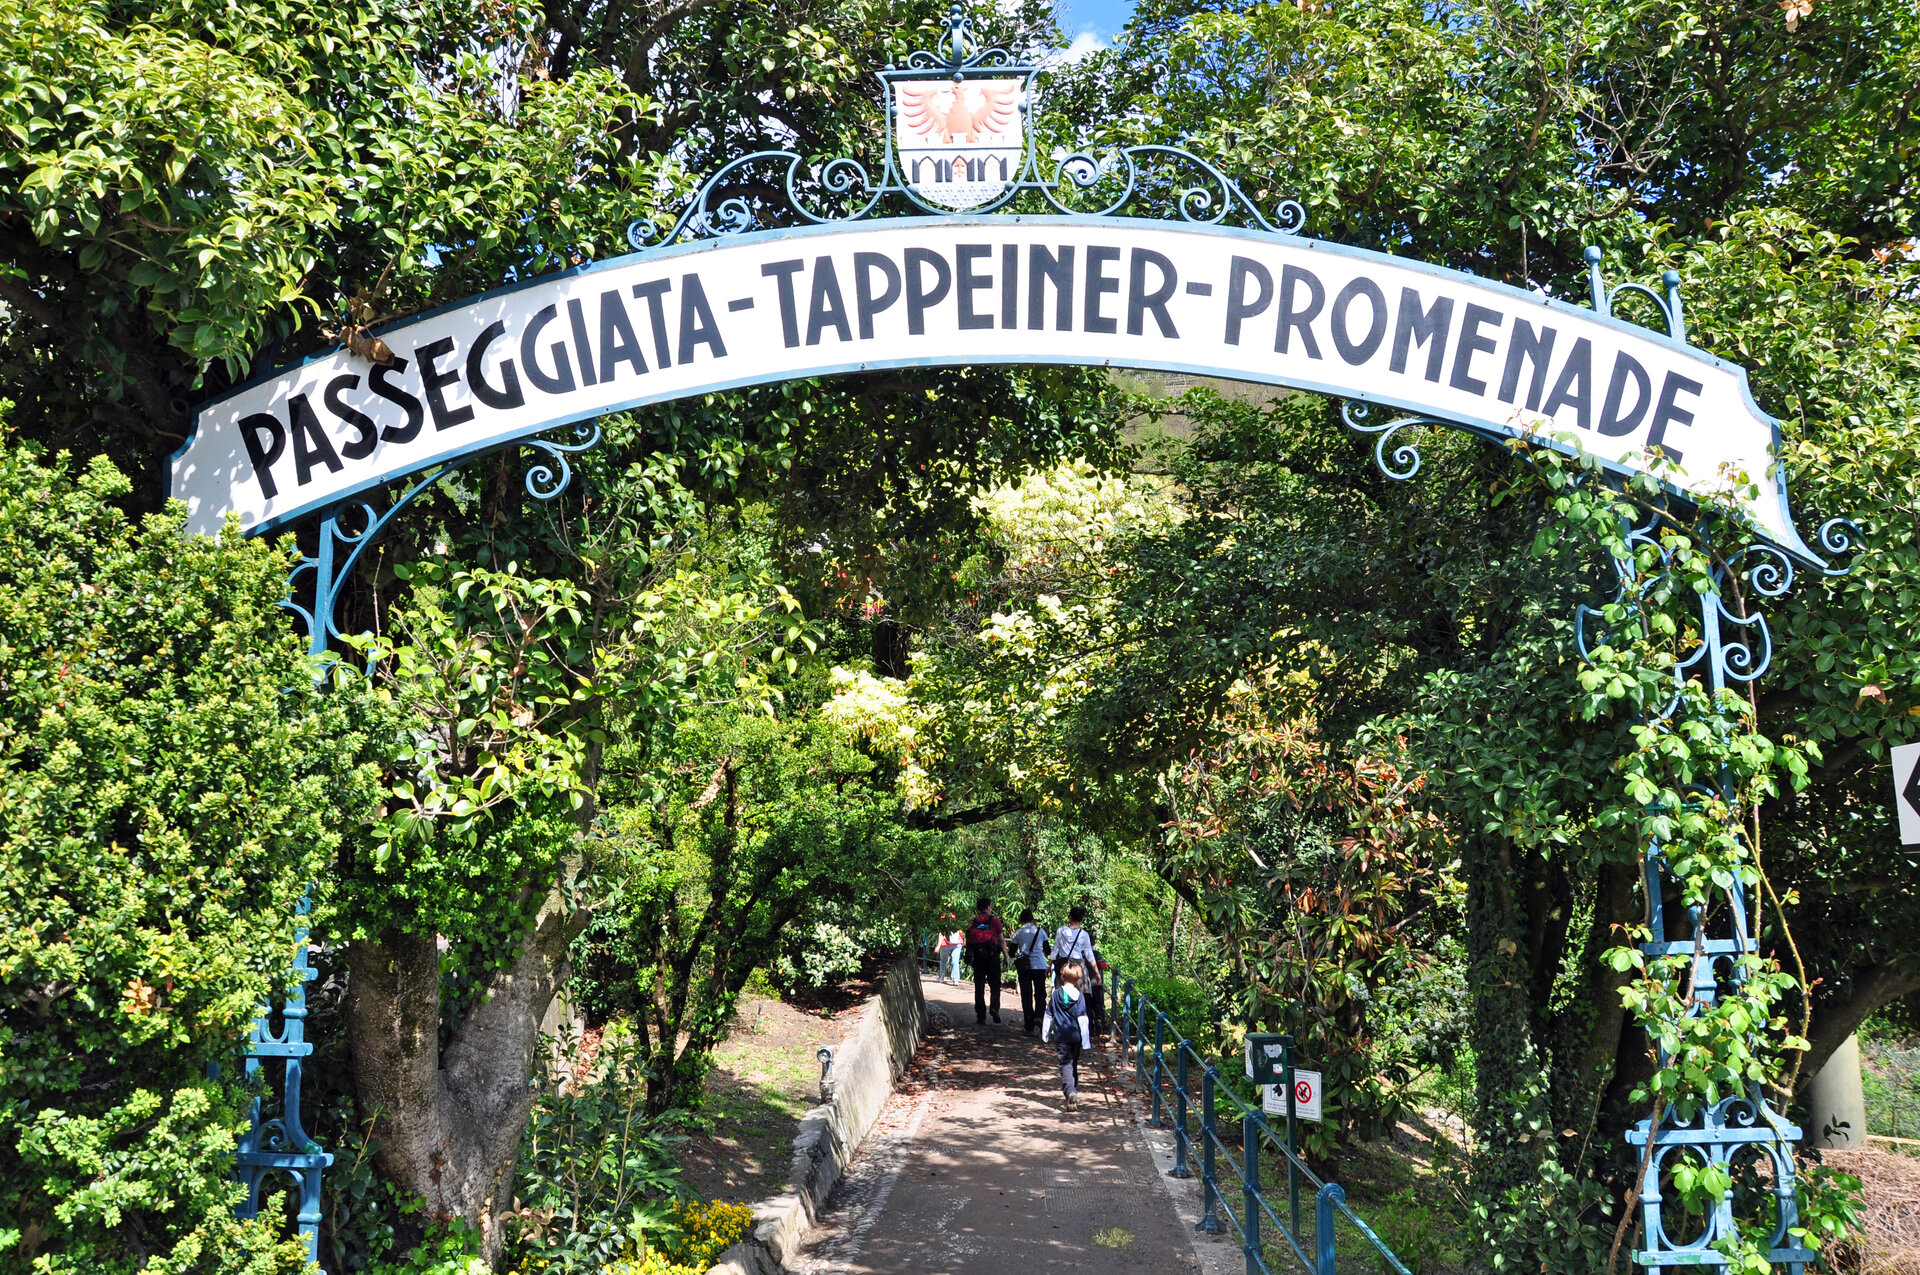 Rundes Bogenschild über Weg mit grünen Bäumen gesäumt mit der Aufschrift Passegiata-Tappeiner-Promenade